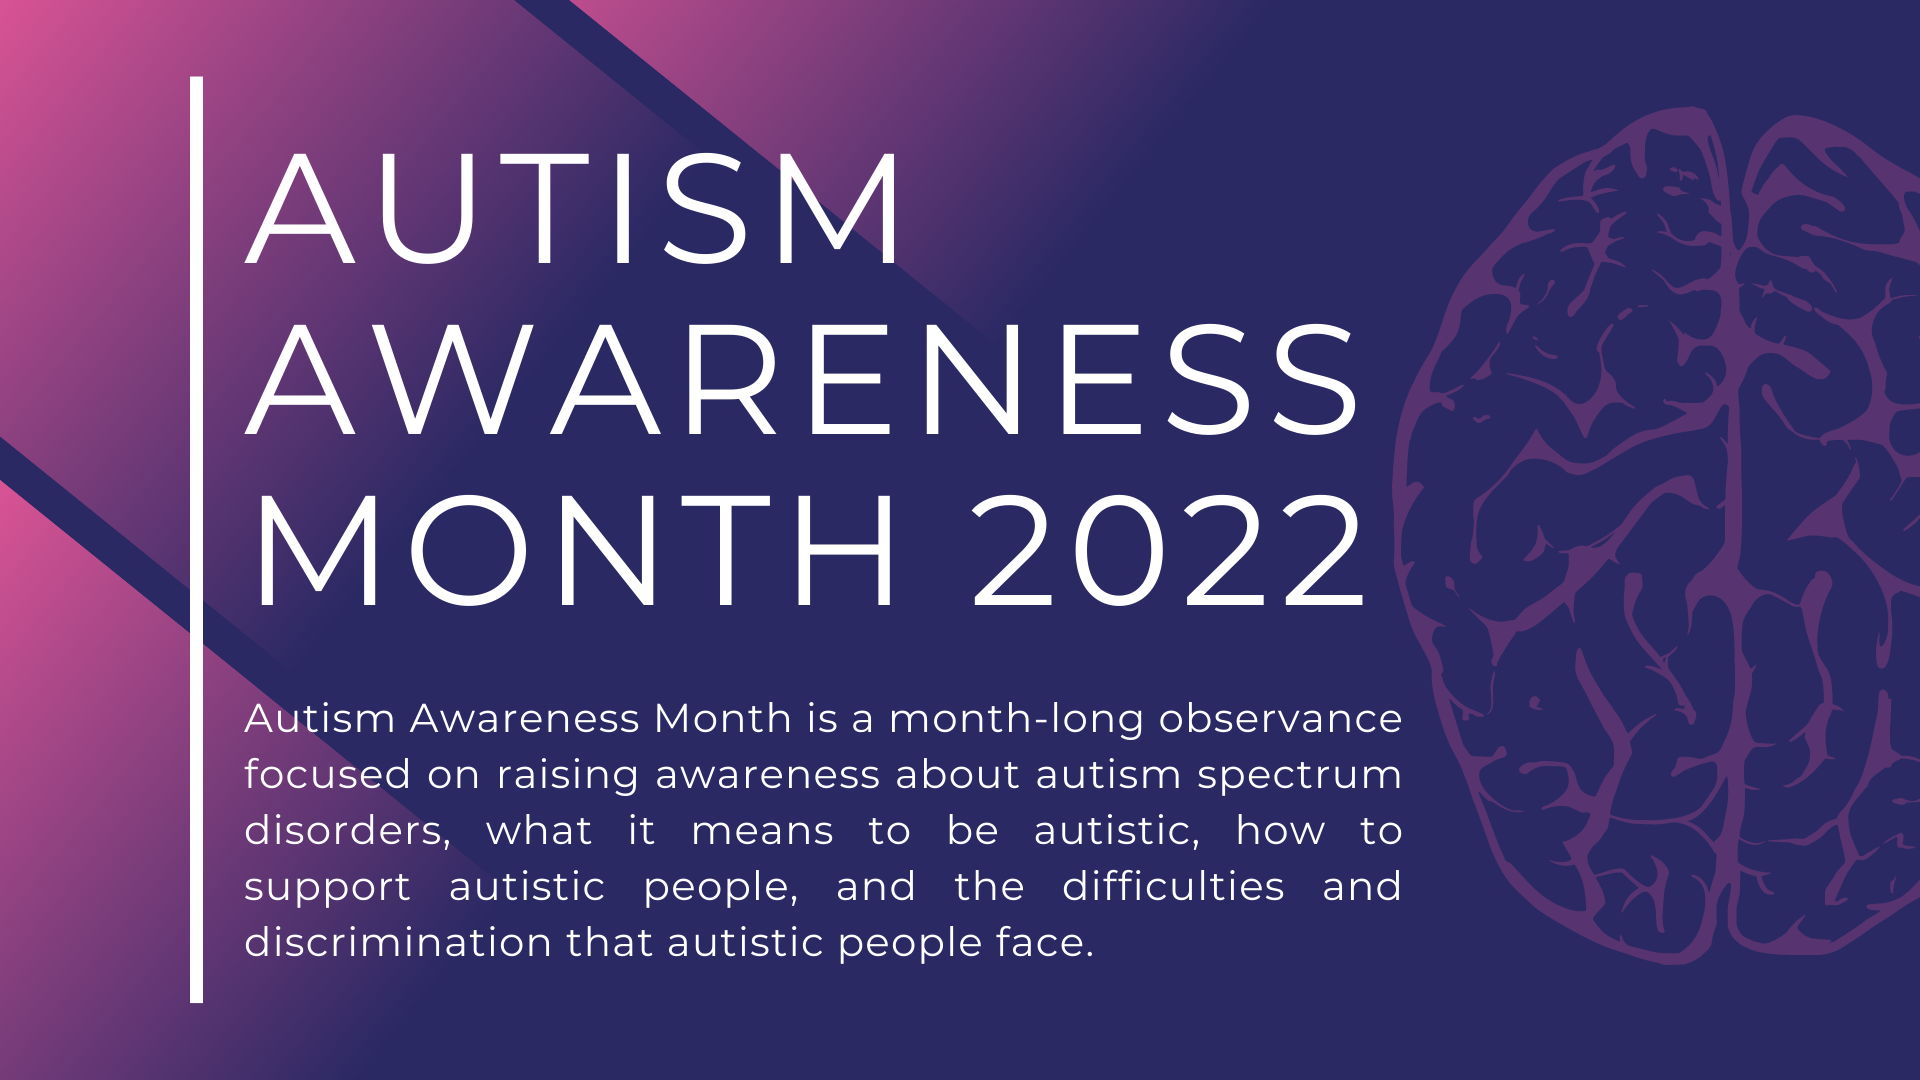 Autism Awareness Month 2022